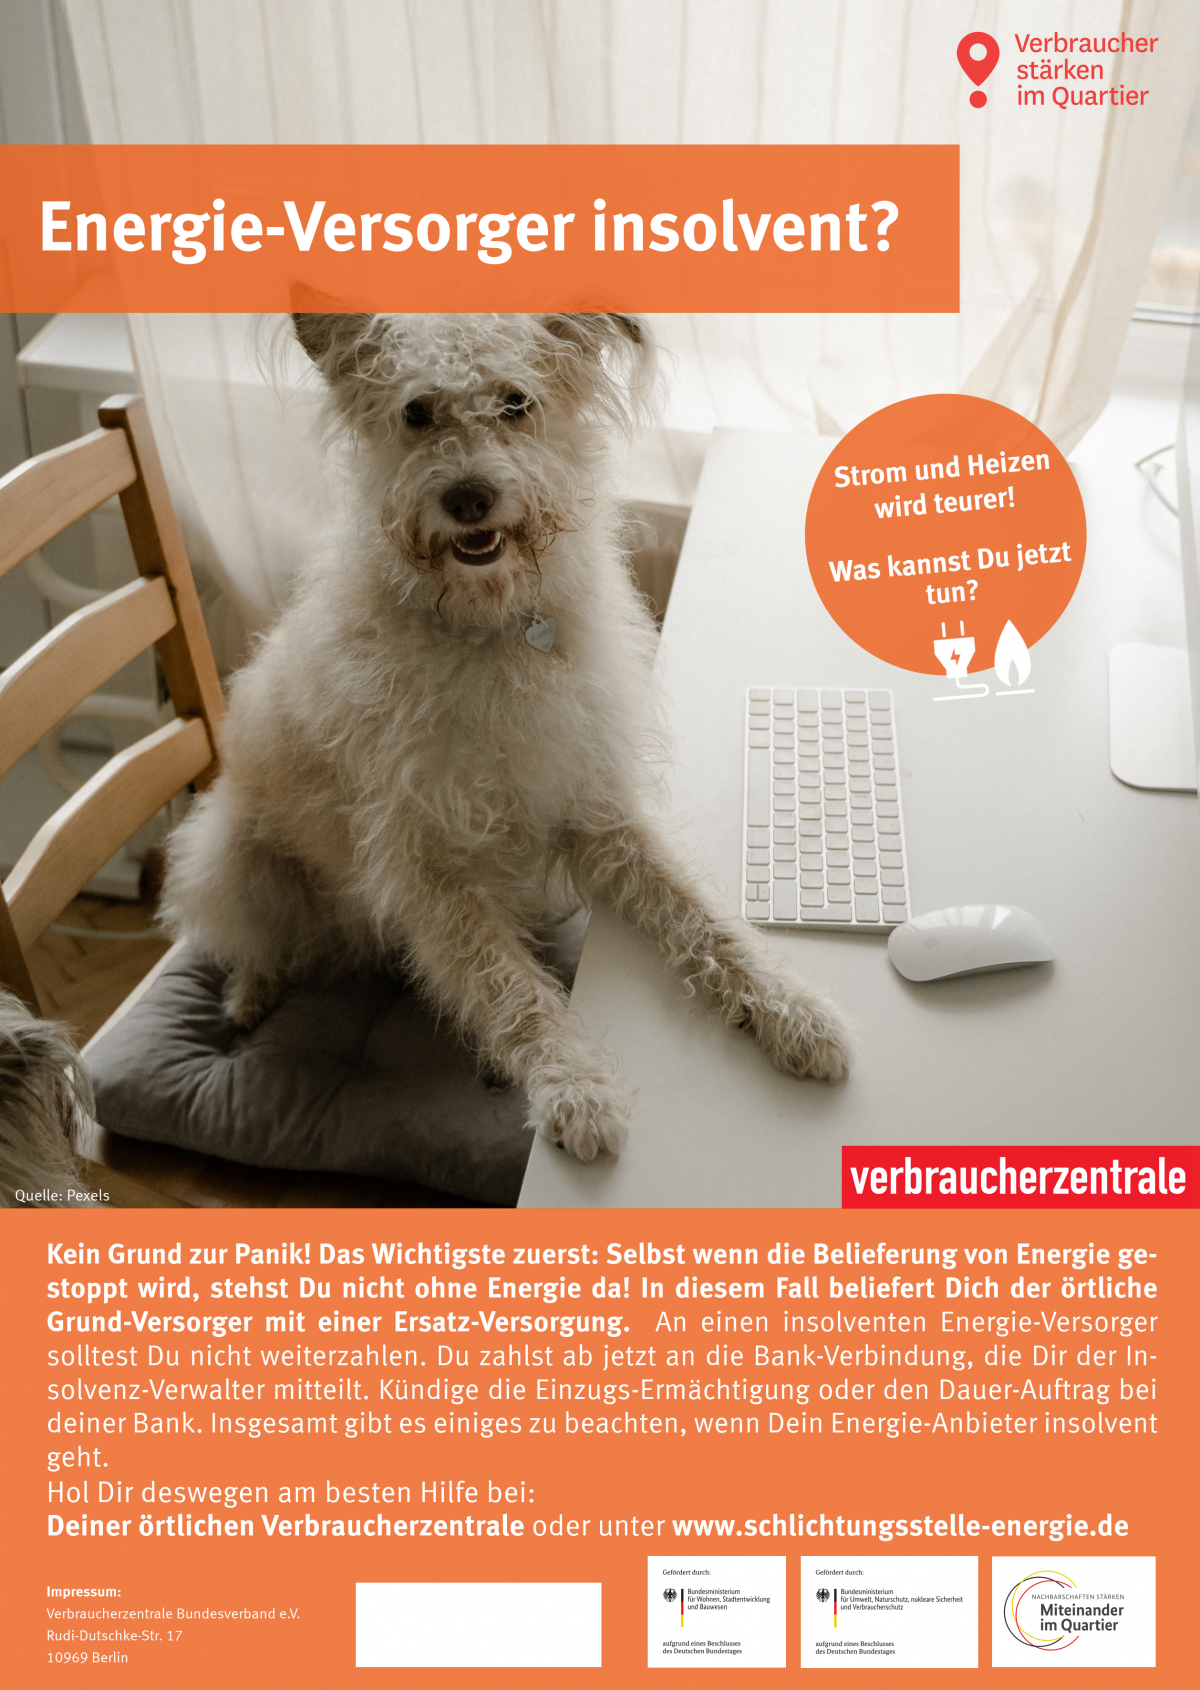 Poster: Kleiner weißer Hund sitzt am Tisch mit Tastatur. Text Überschrift: Energie-Versorger insolvent?